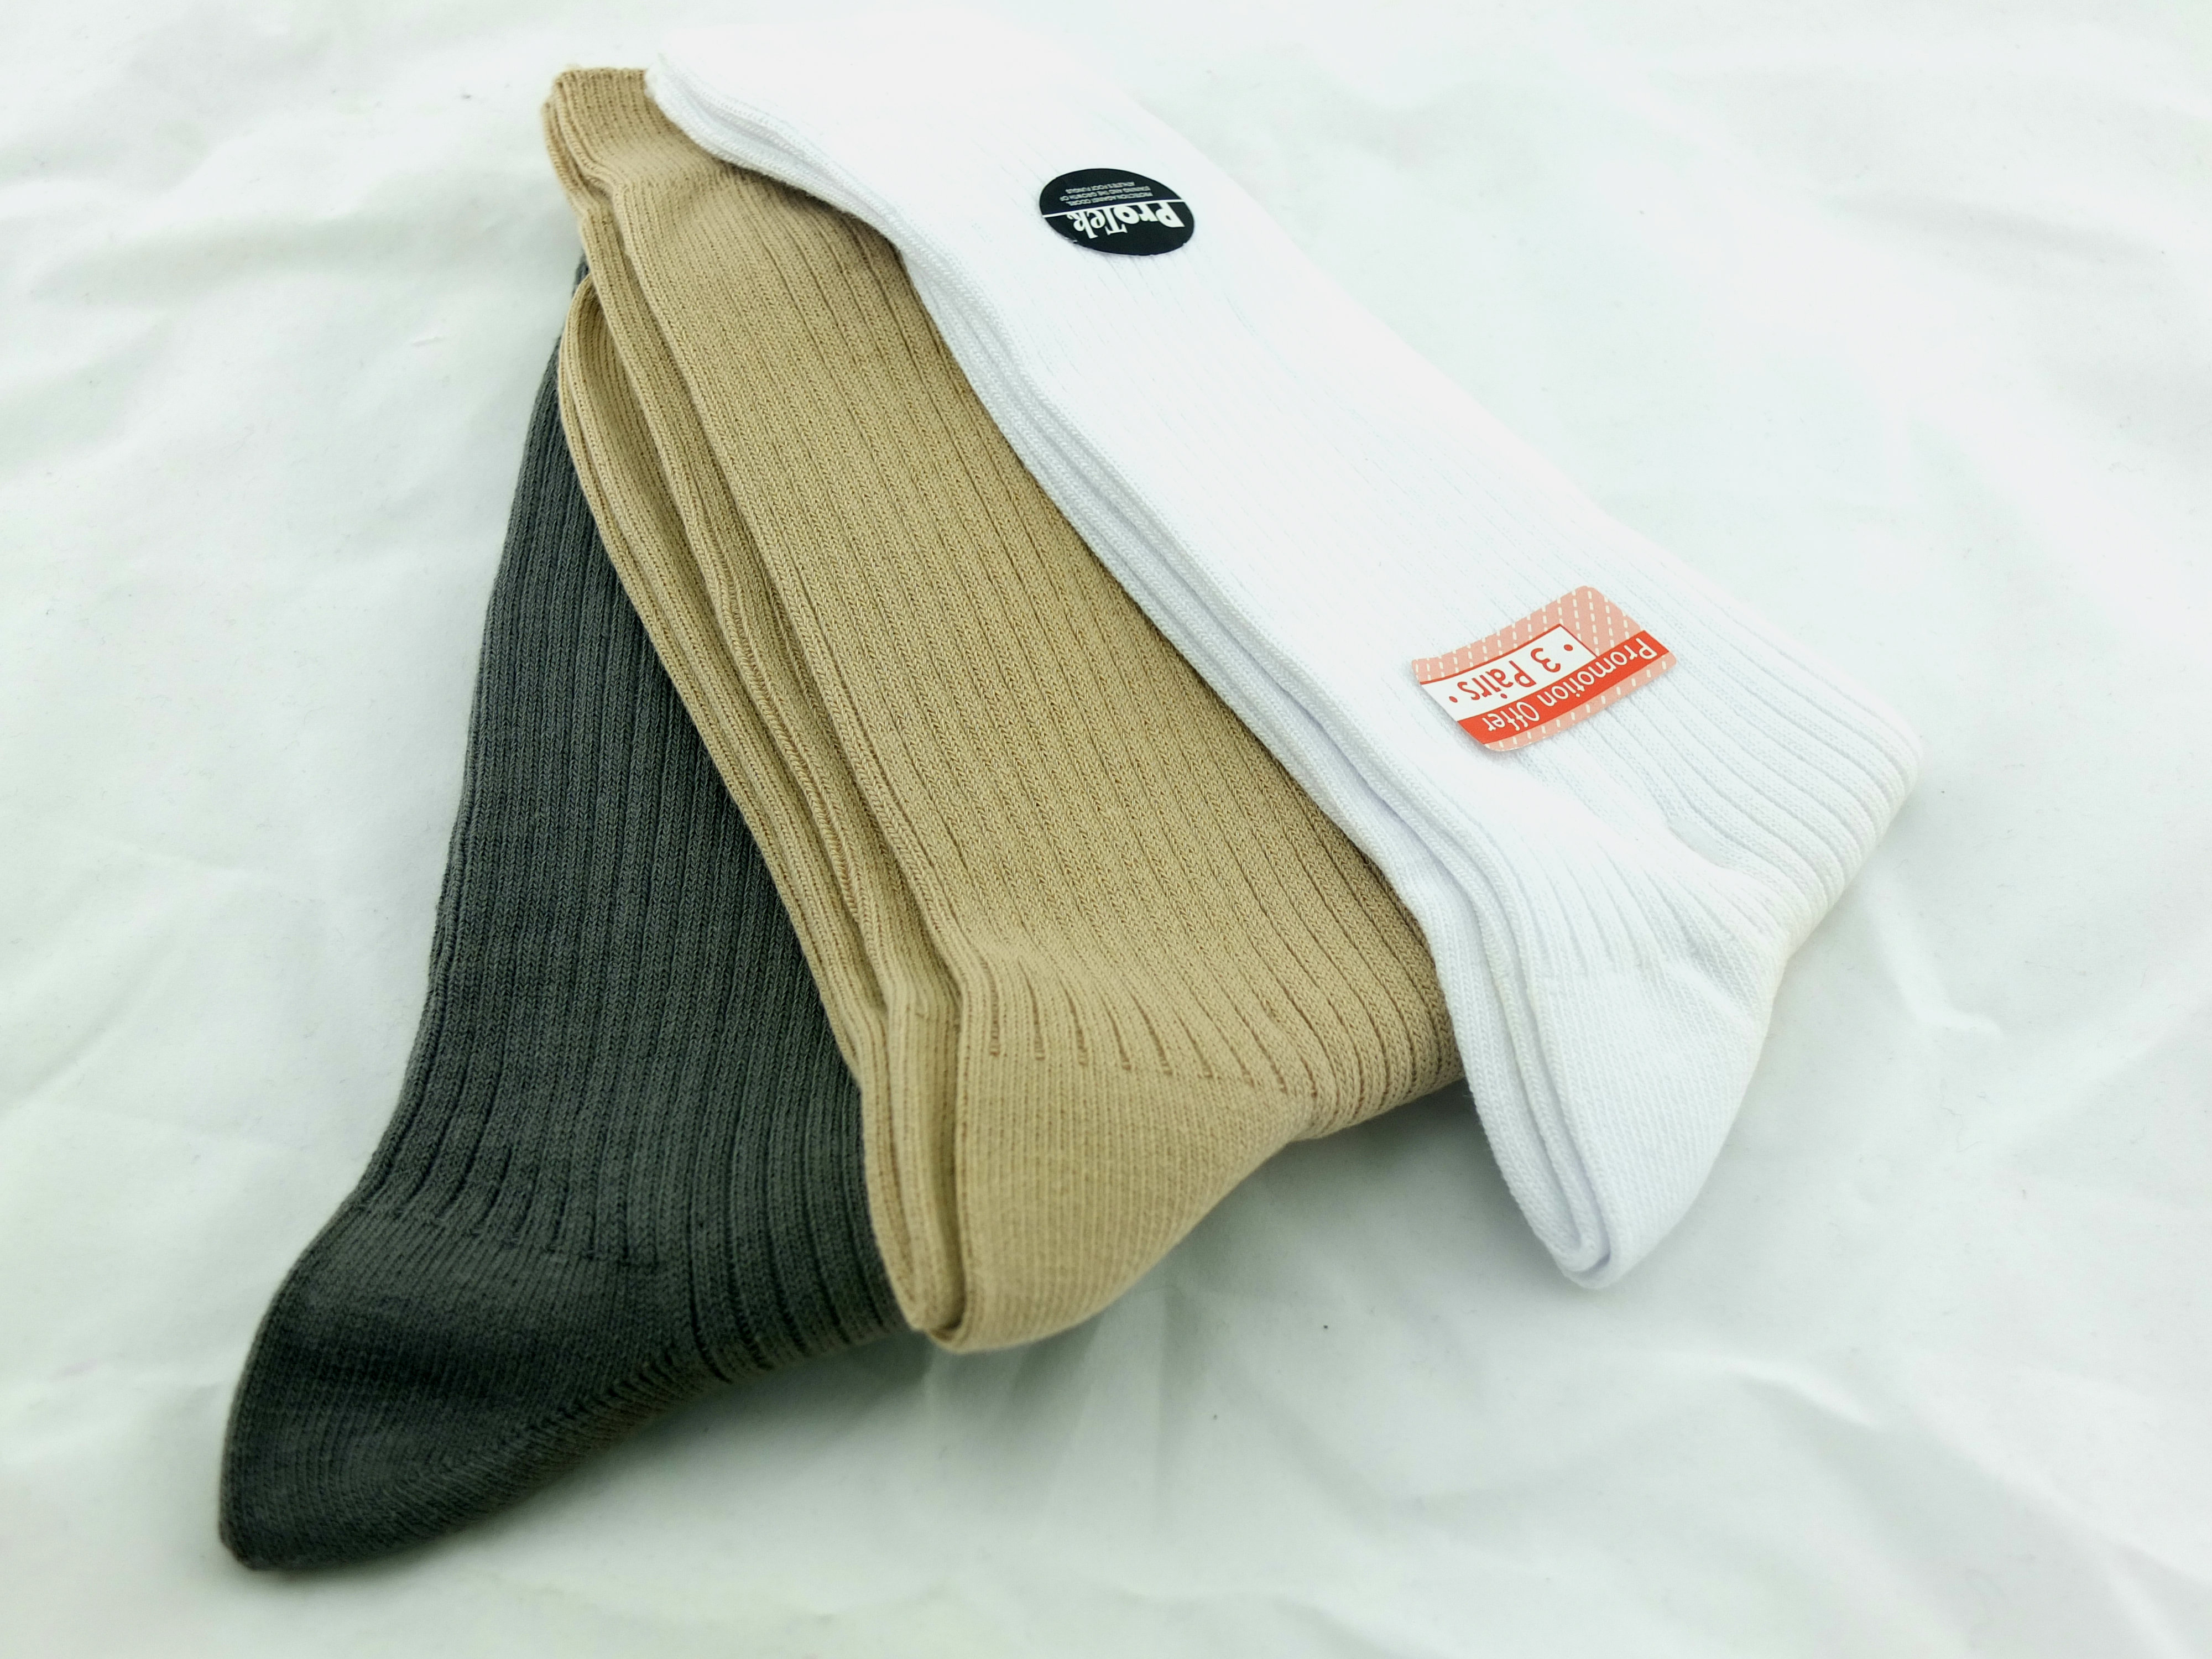 Lee Men/'s Low Cut Antimicrobial /& Odor Control Socks 6 Pair Men/'s 6-12